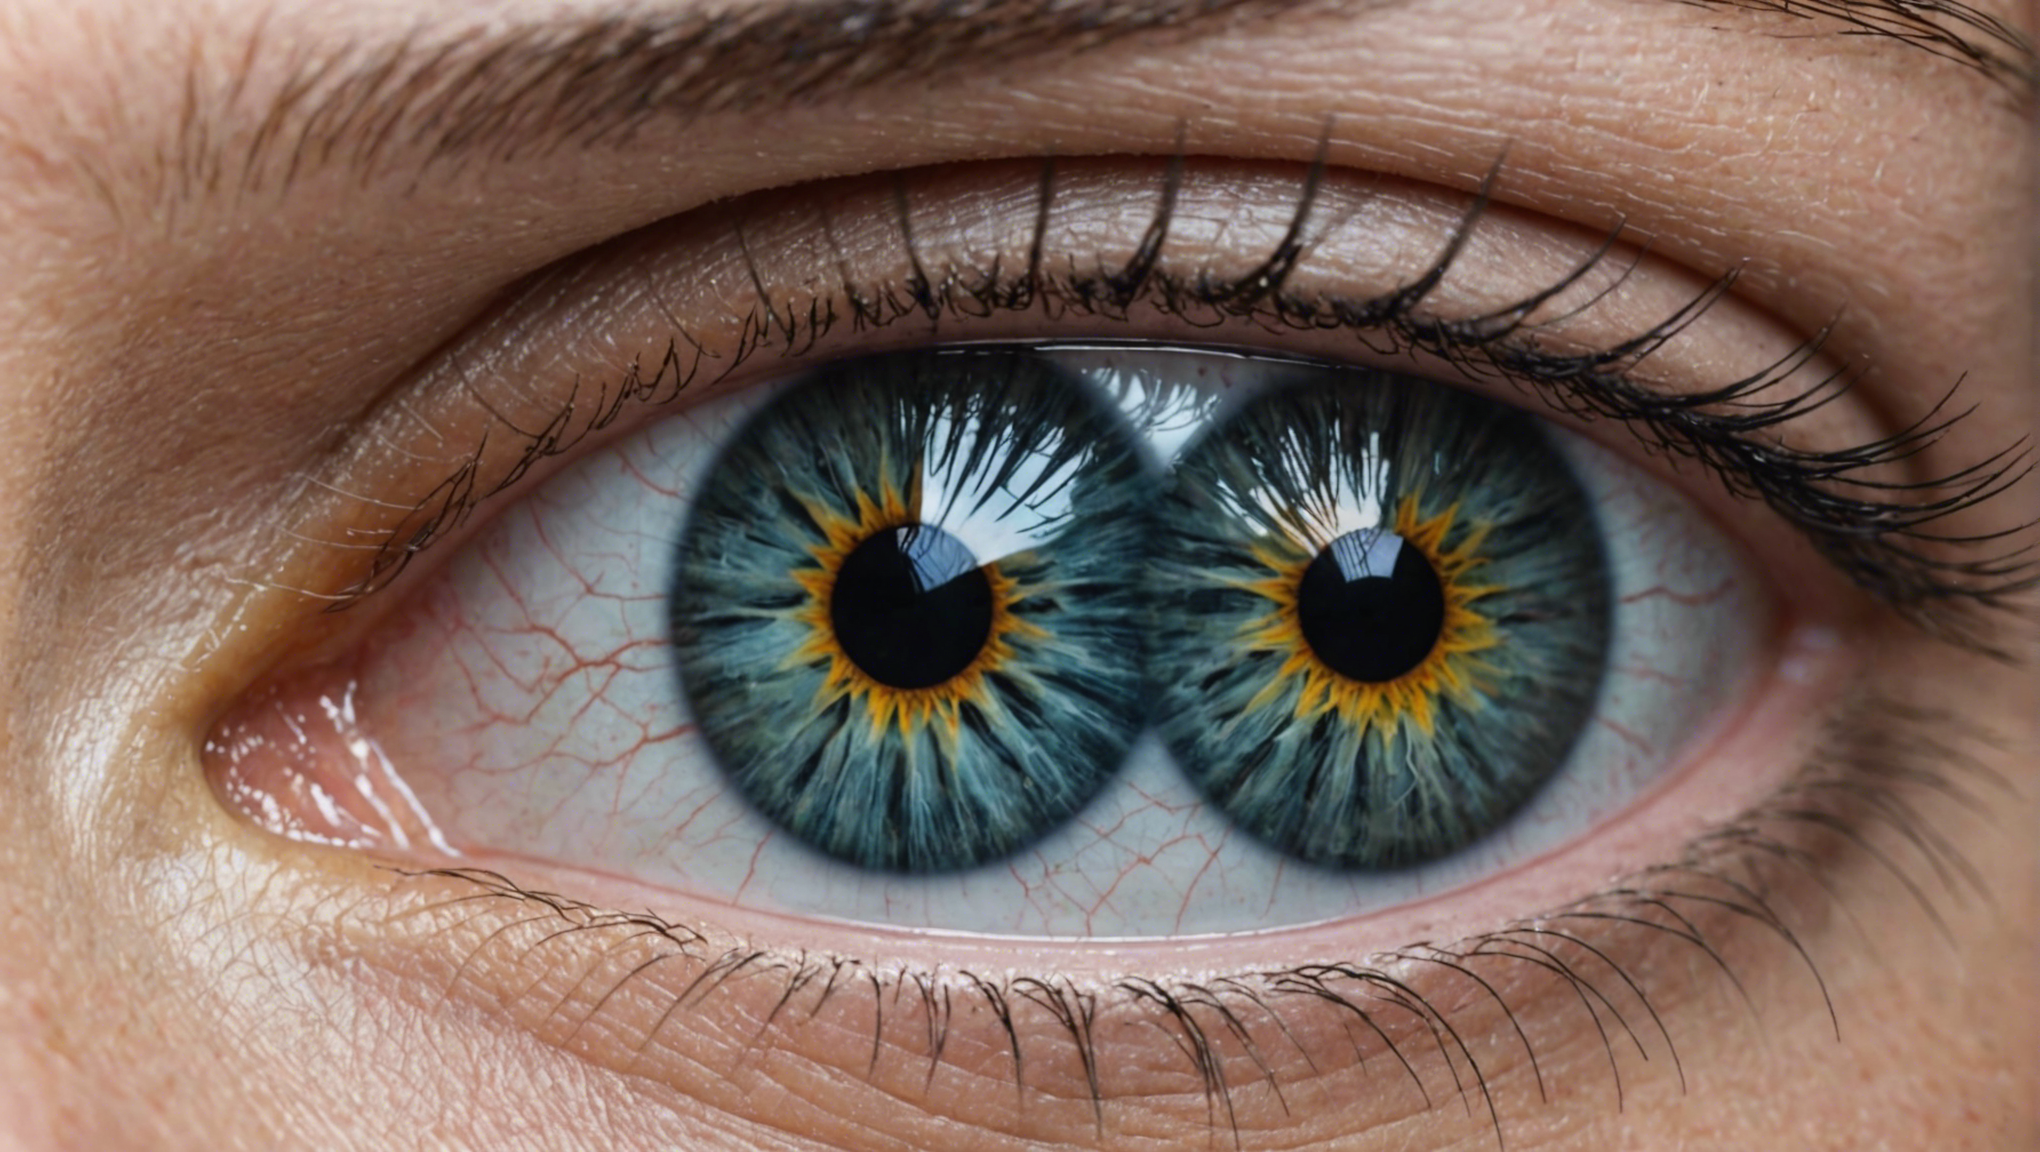 découvrez tout sur l'opération des yeux à lyon: avantages, risques et résultats pour une vision parfaite.